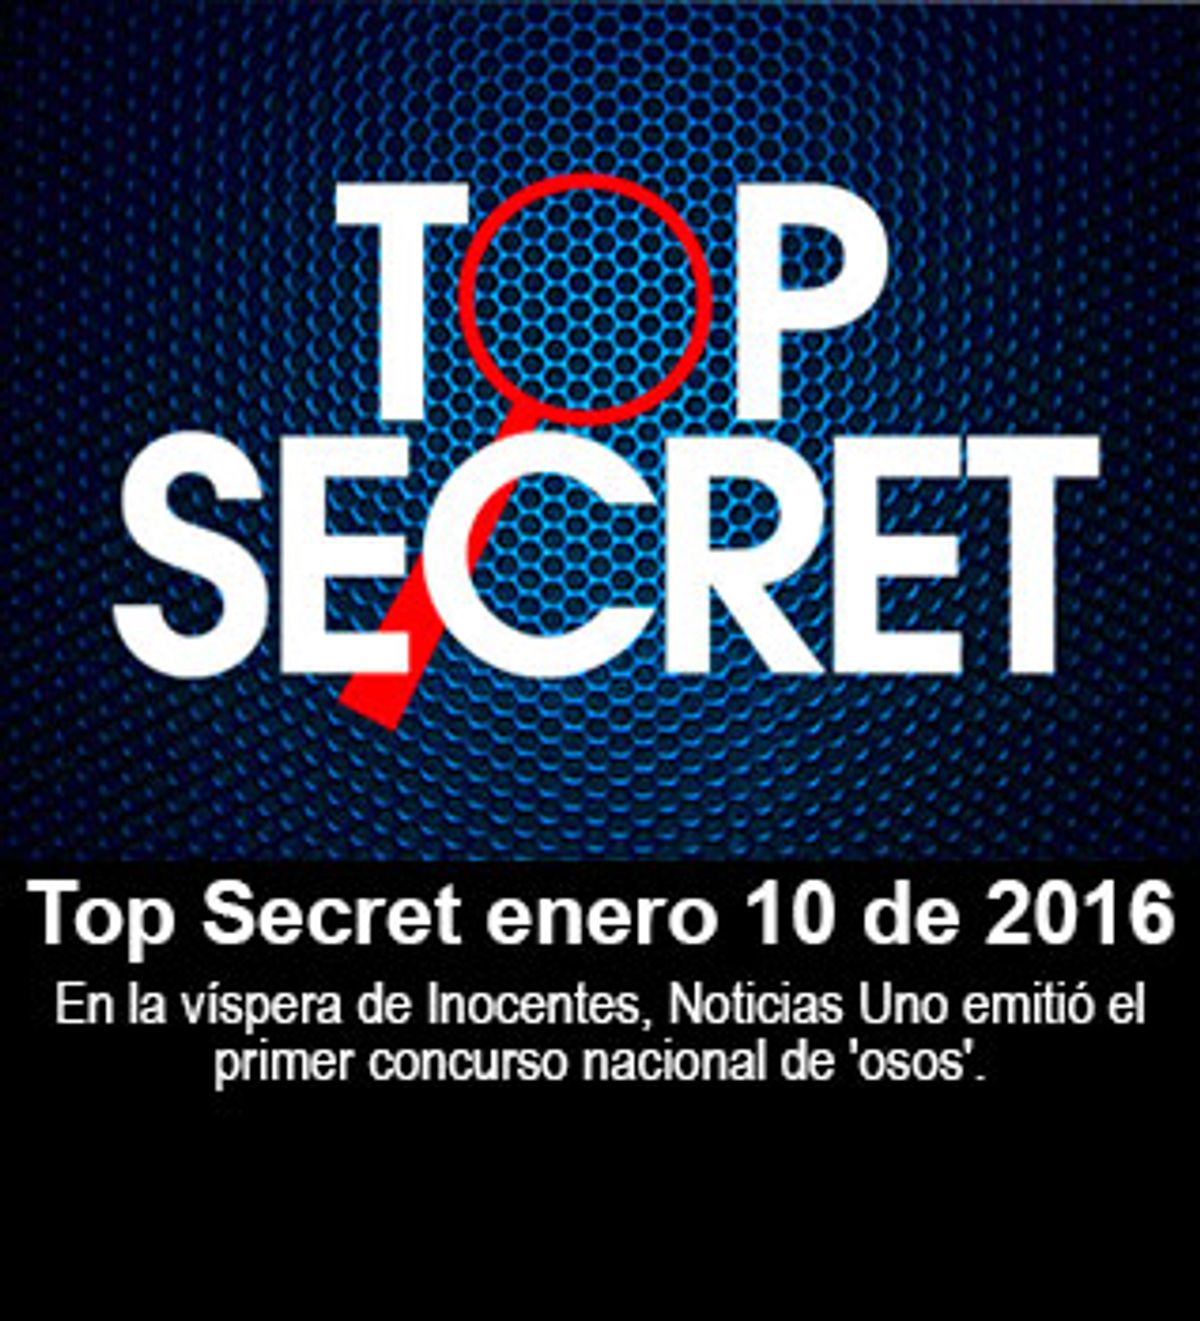 Top Secret enero 10 de 2016